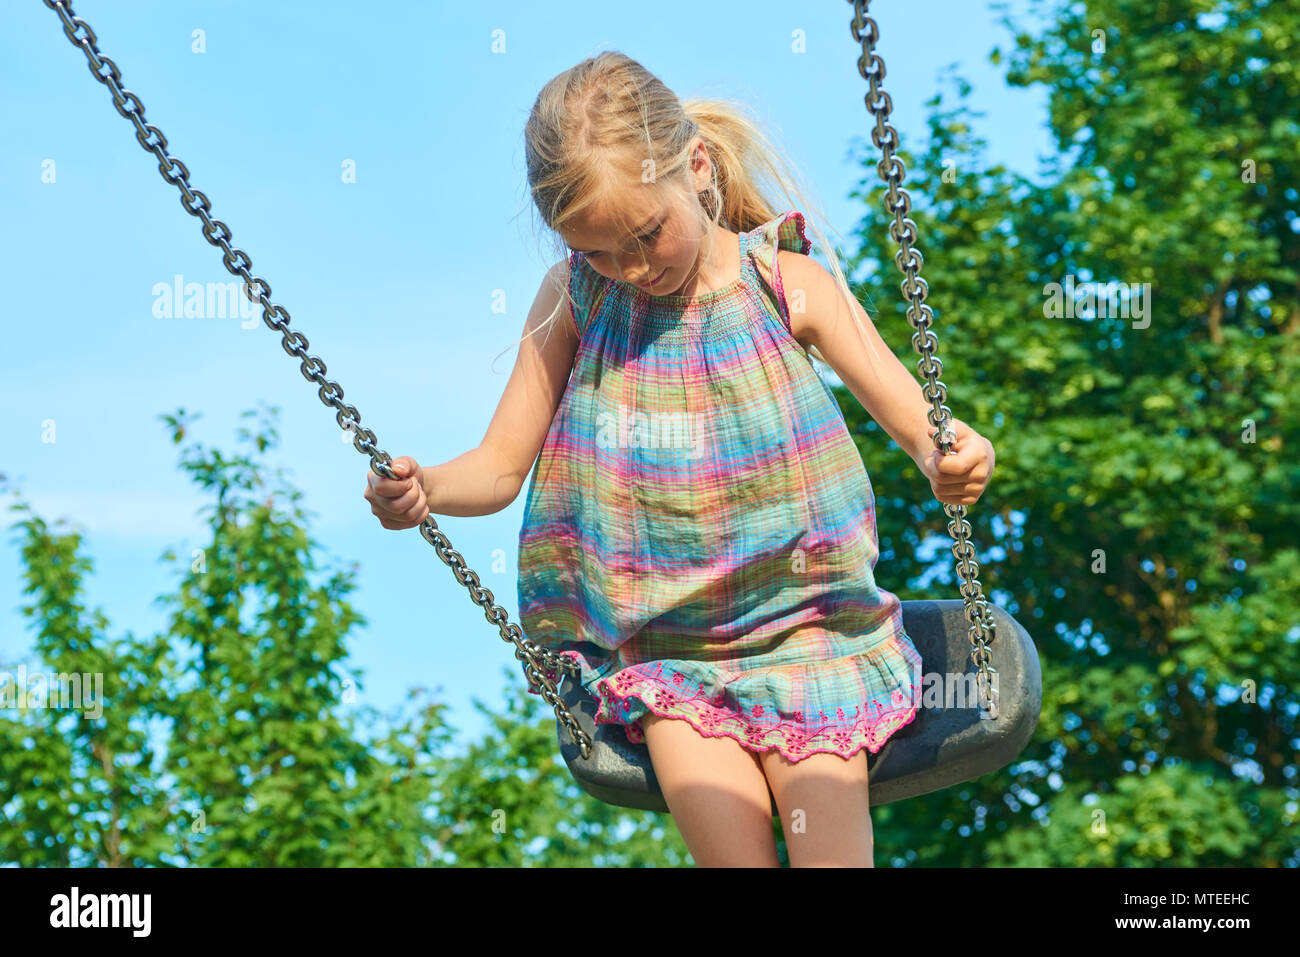 Kleines Kind Blondes Mädchen Spaß Haben Auf Einer Schaukel Im Freien Sommer Spielplatz Mädchen 